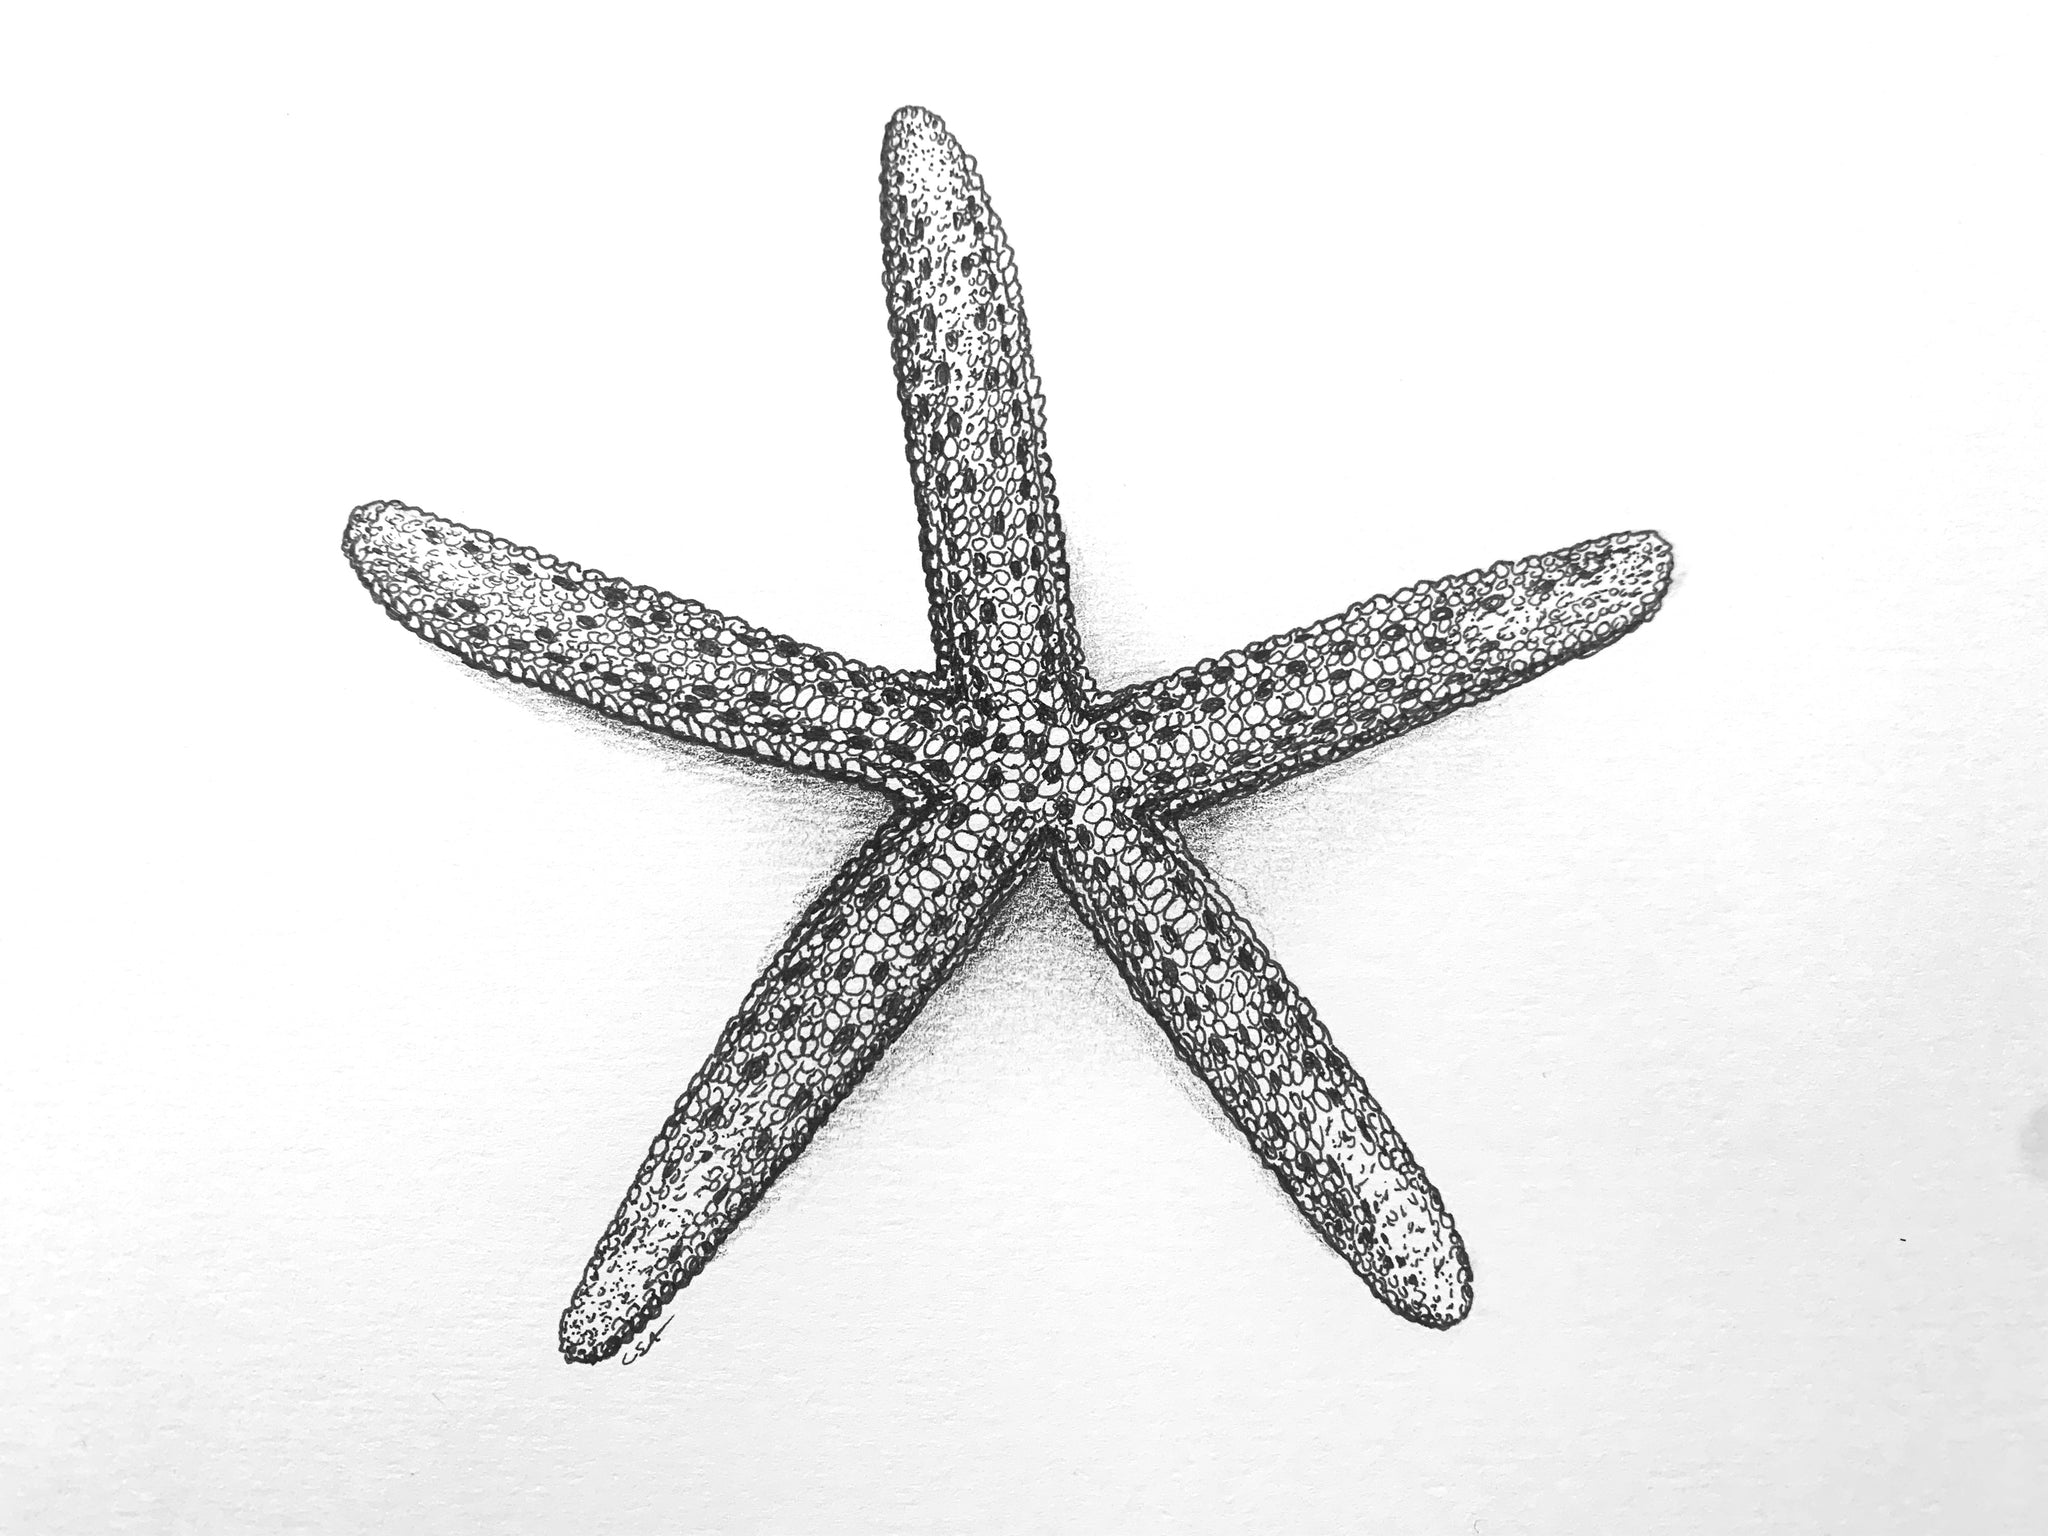 star fish drawing